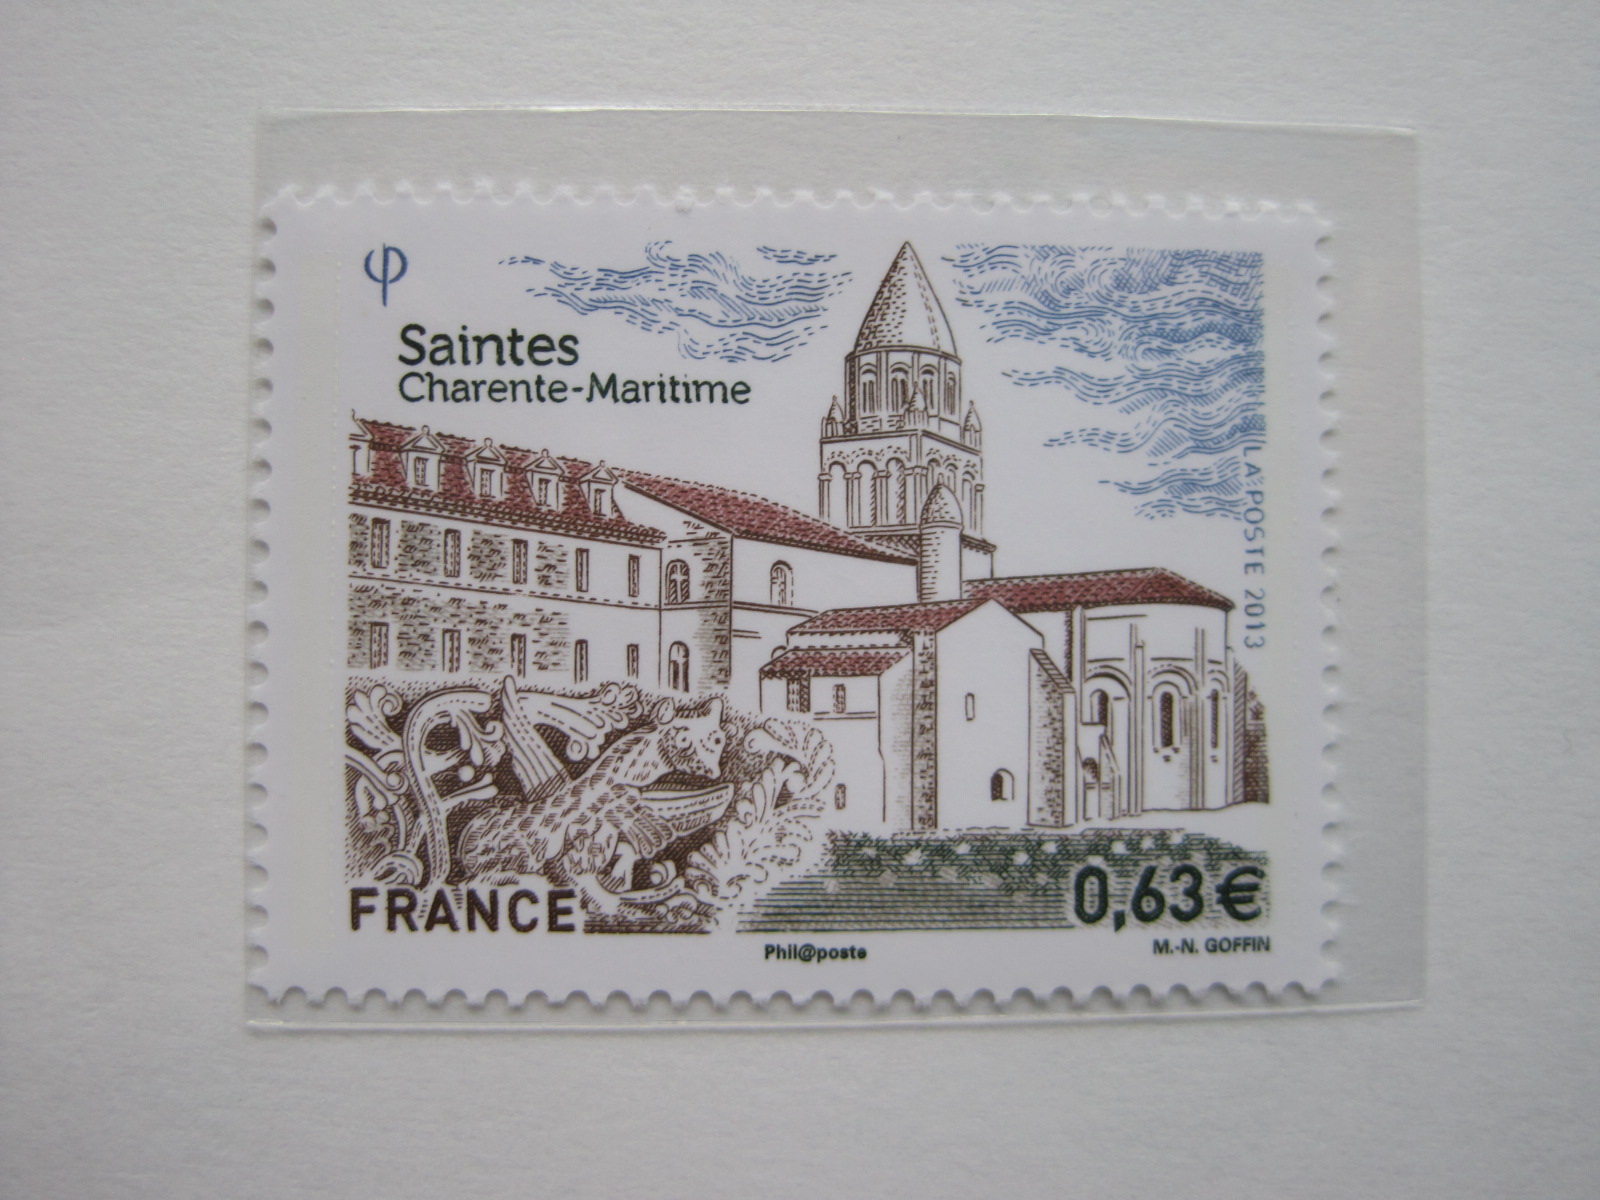 2013年法国旅游系列-桑特城人文景观邮票(1全